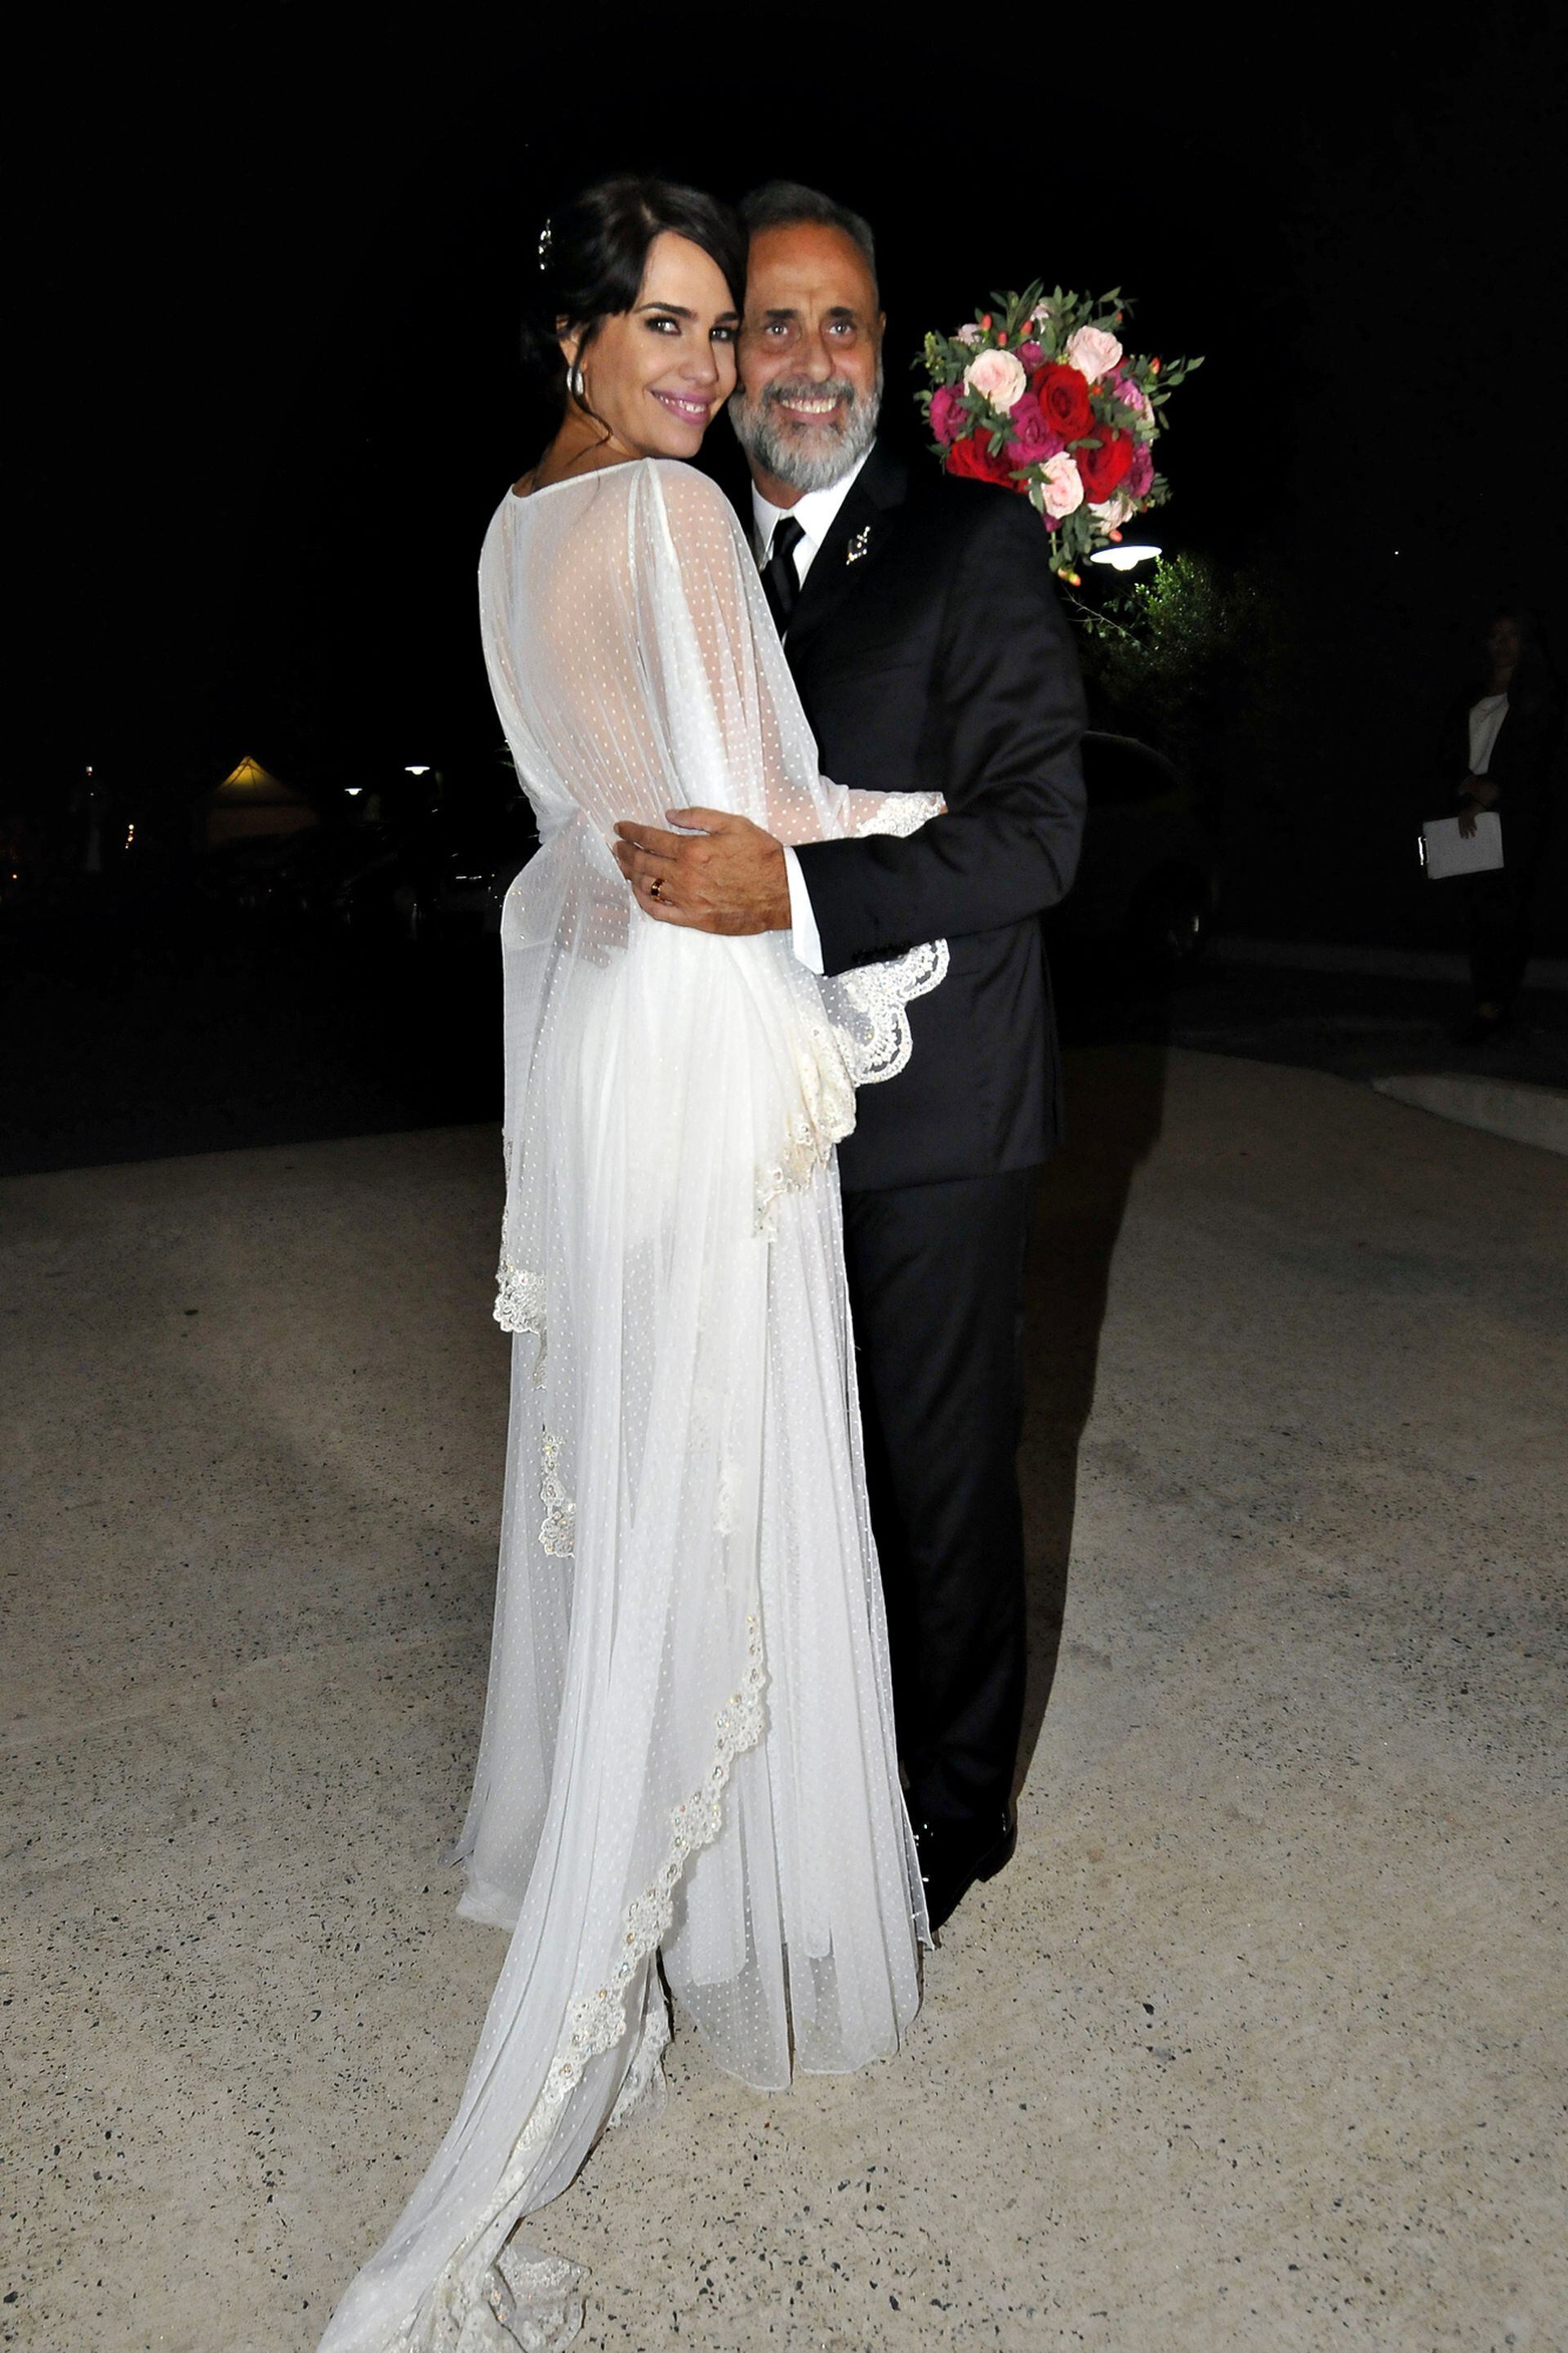 El casamiento de Jorge Rial y Romina Pereiro